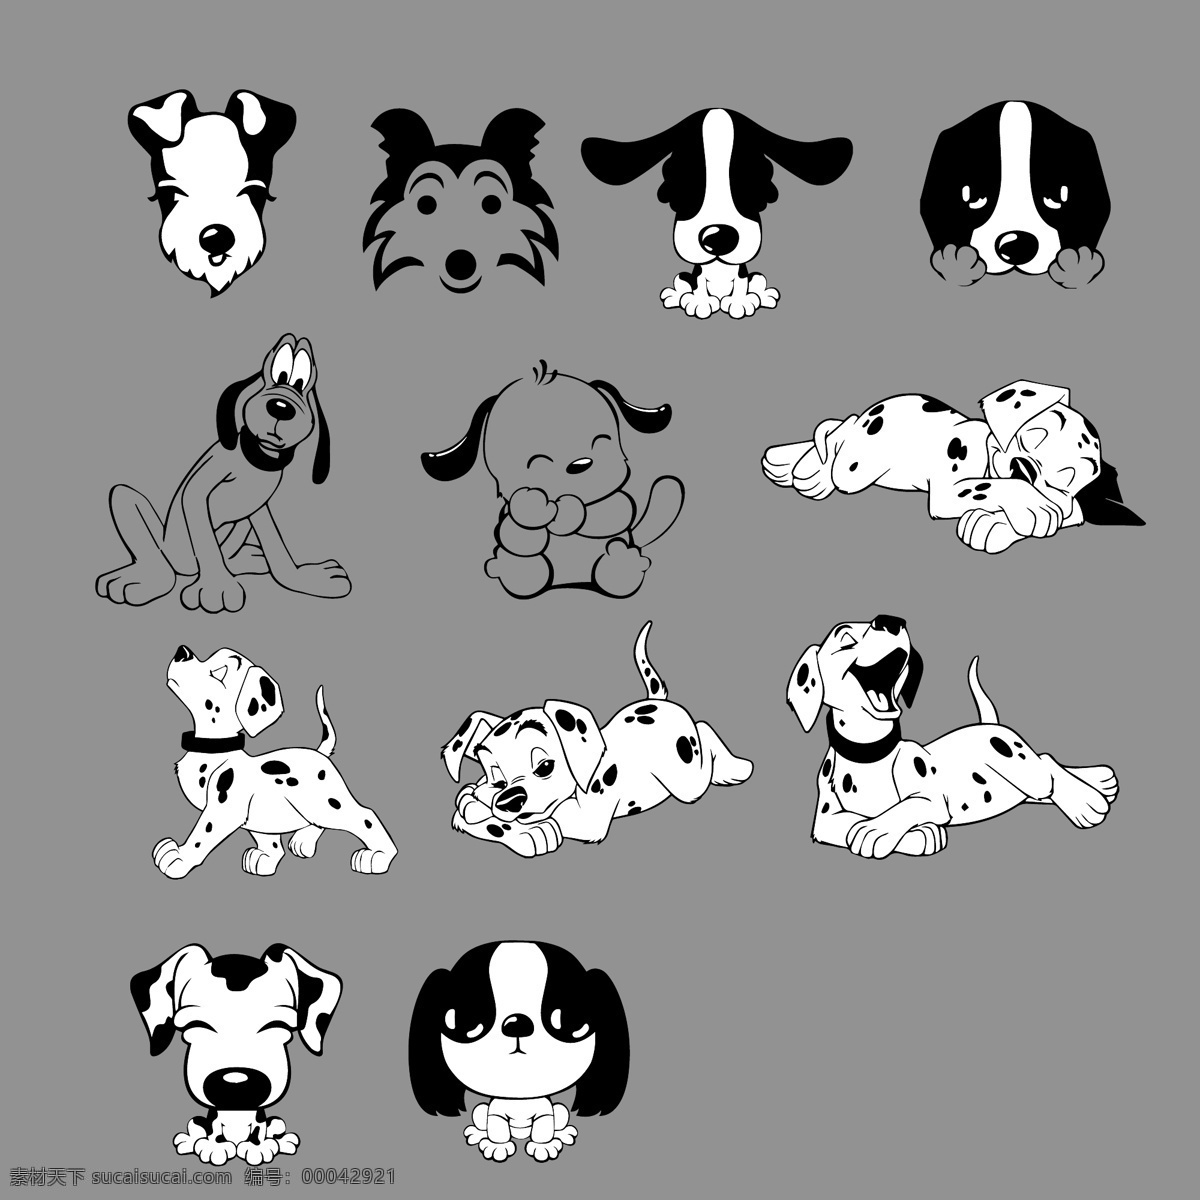 卡通 宠物狗 矢量图 ai矢量 logo 宠物矢量素材 狗狗 黑白 卡通宠物 配图 矢量